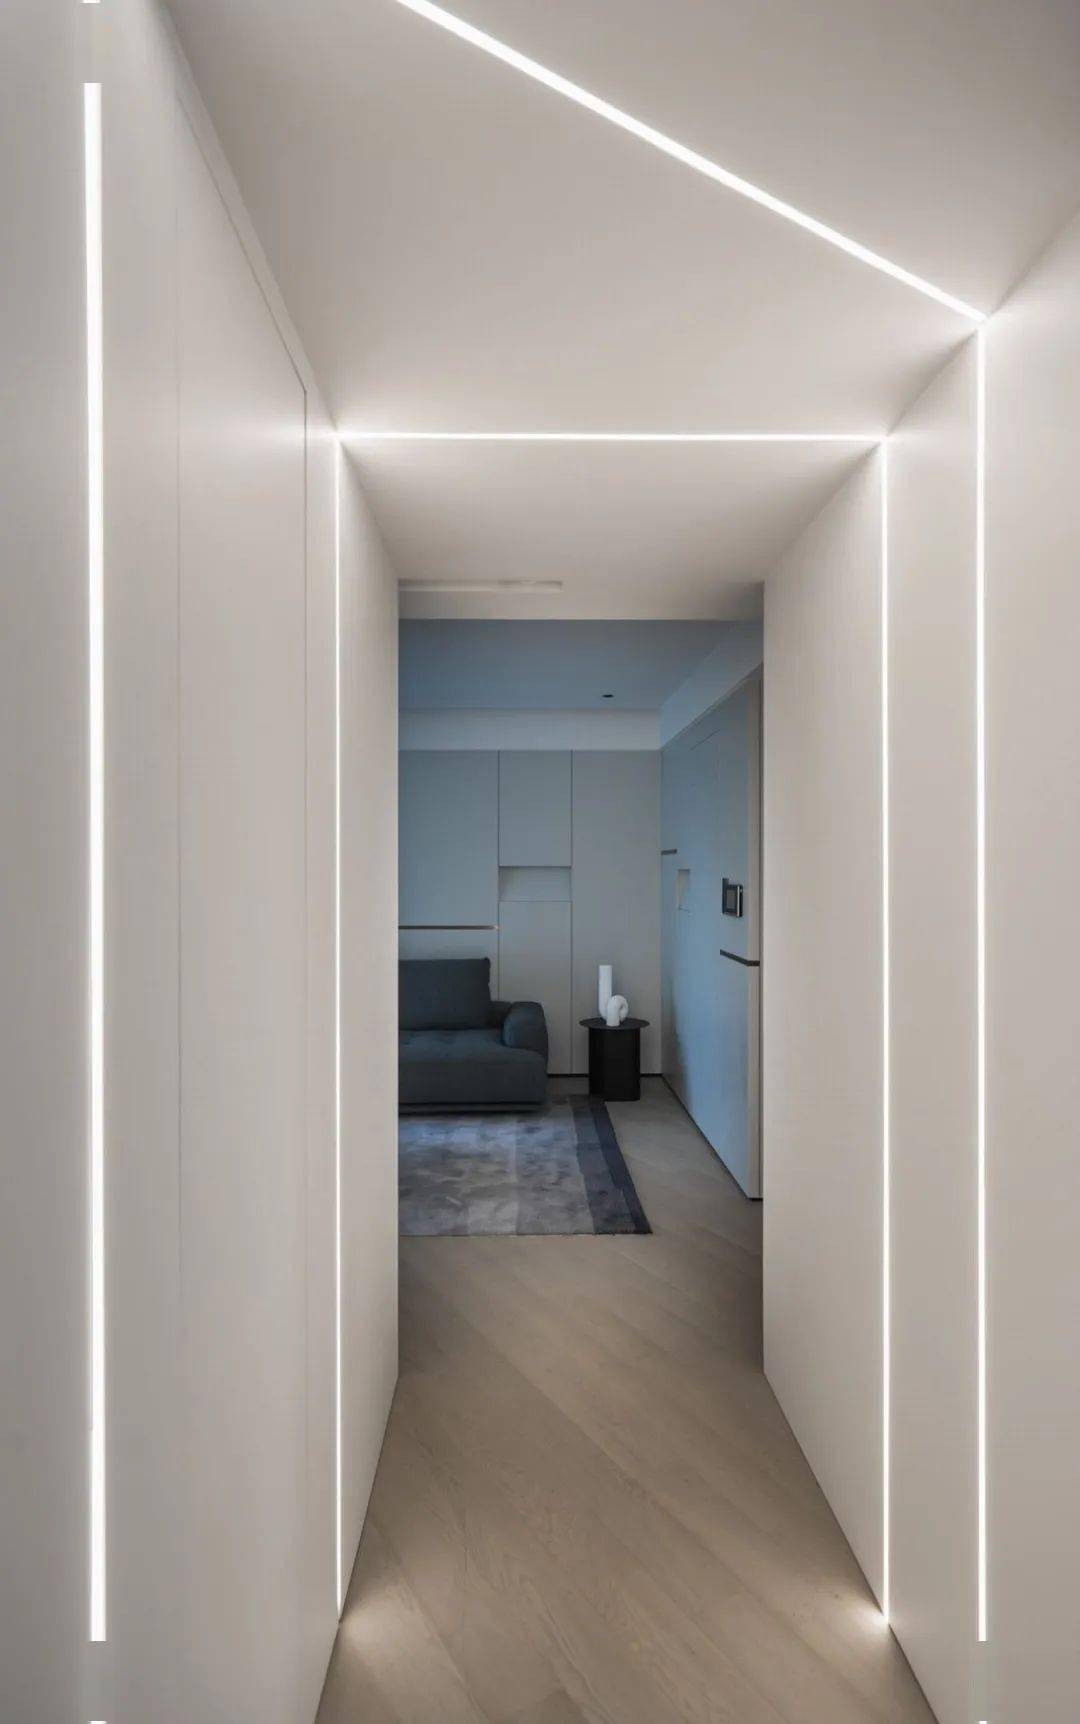 纯白的墙面将储物室的门隐藏其间,不规则的线性灯,营造个性独特的未来